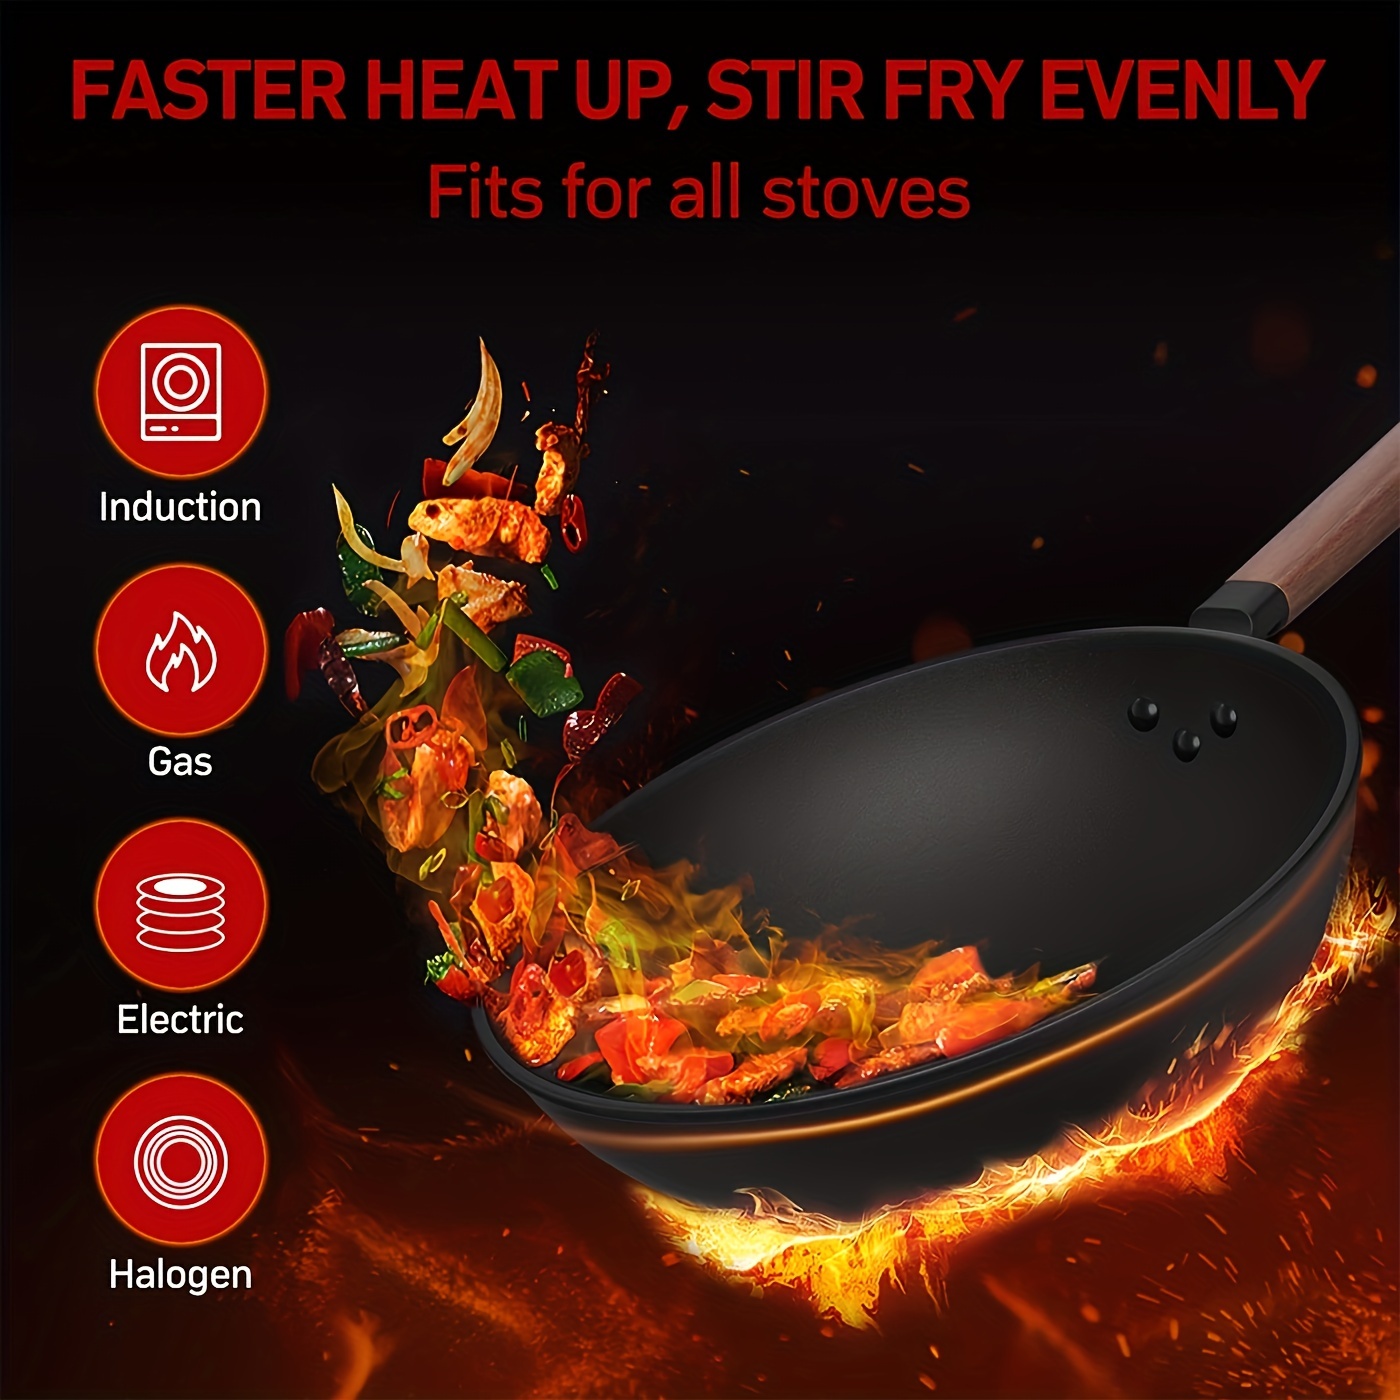 Wok Pan With Lid Carbon Steel Wok Nonstick Woks And Stir fry - Temu